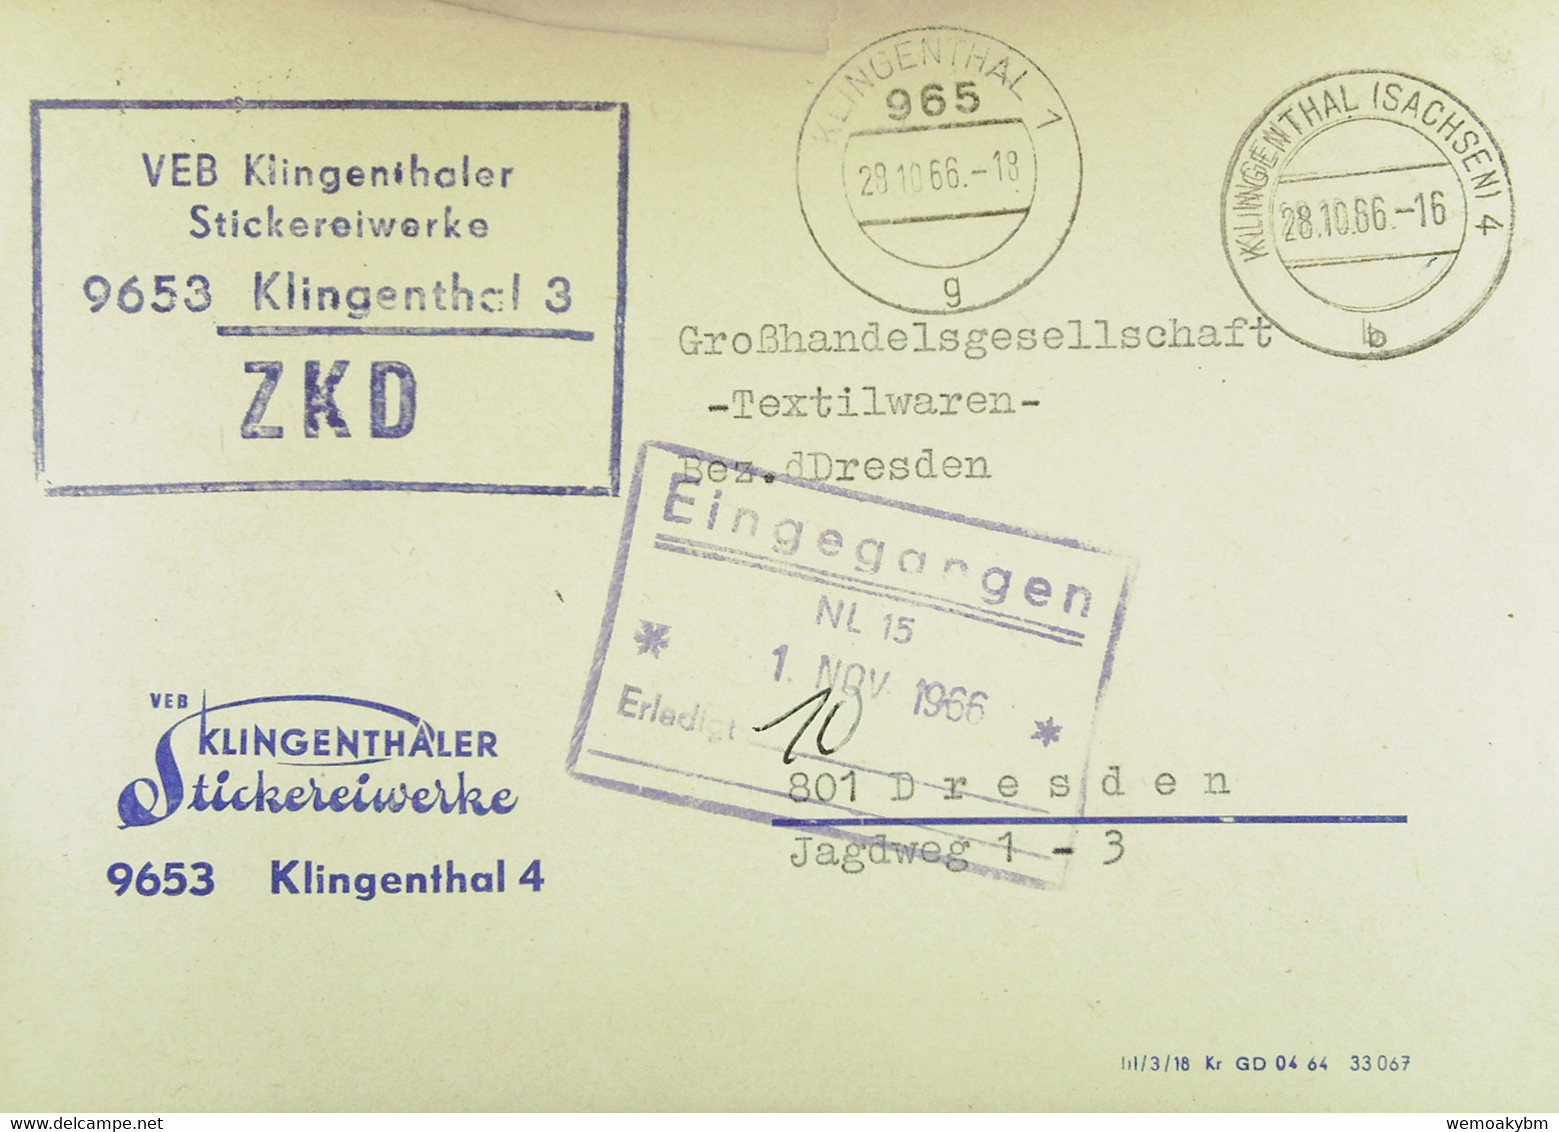 Fern-Brief Mit ZKD-Kastenst "VEB Klingenthaler Stickereiwerke 9653 Klingenthal 3" 28.10.66 An GHG Textilwaren Dresden - Covers & Documents